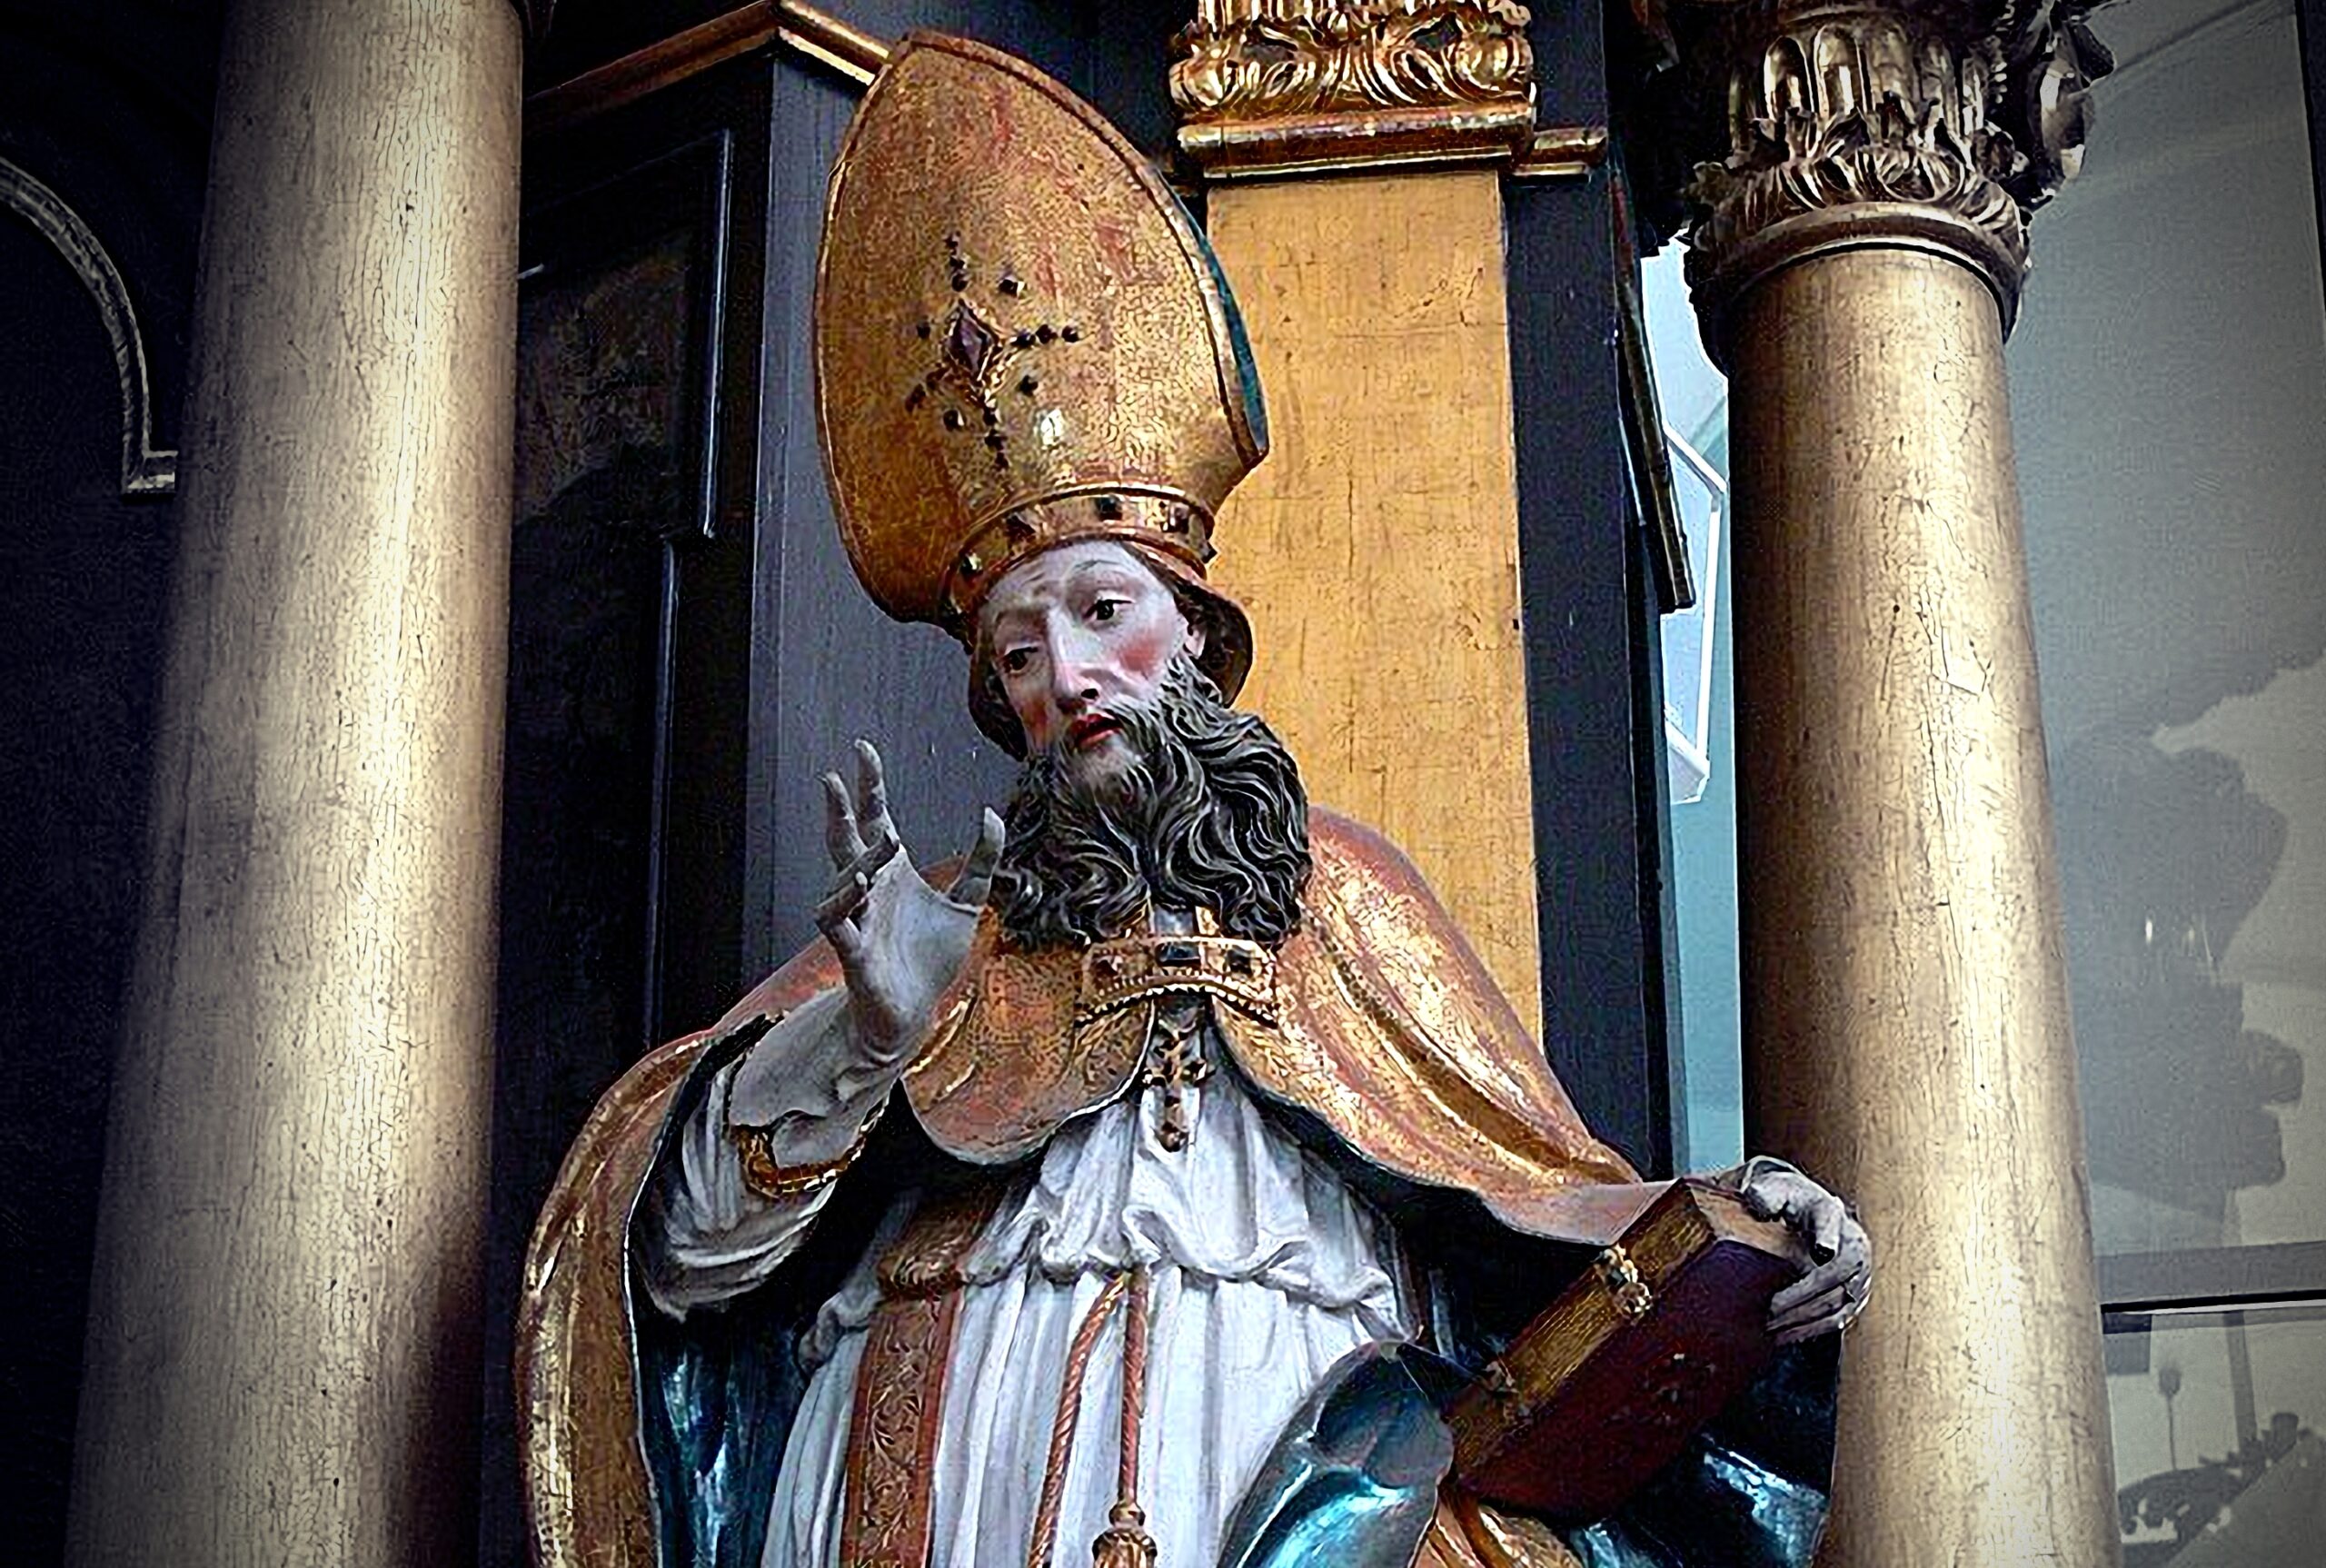 Św. Hilary, Mondsee_Kirche_-_Johannesaltar_St.Hilarius_zdjęcie_CC BY-SA 3.0_wikimedia